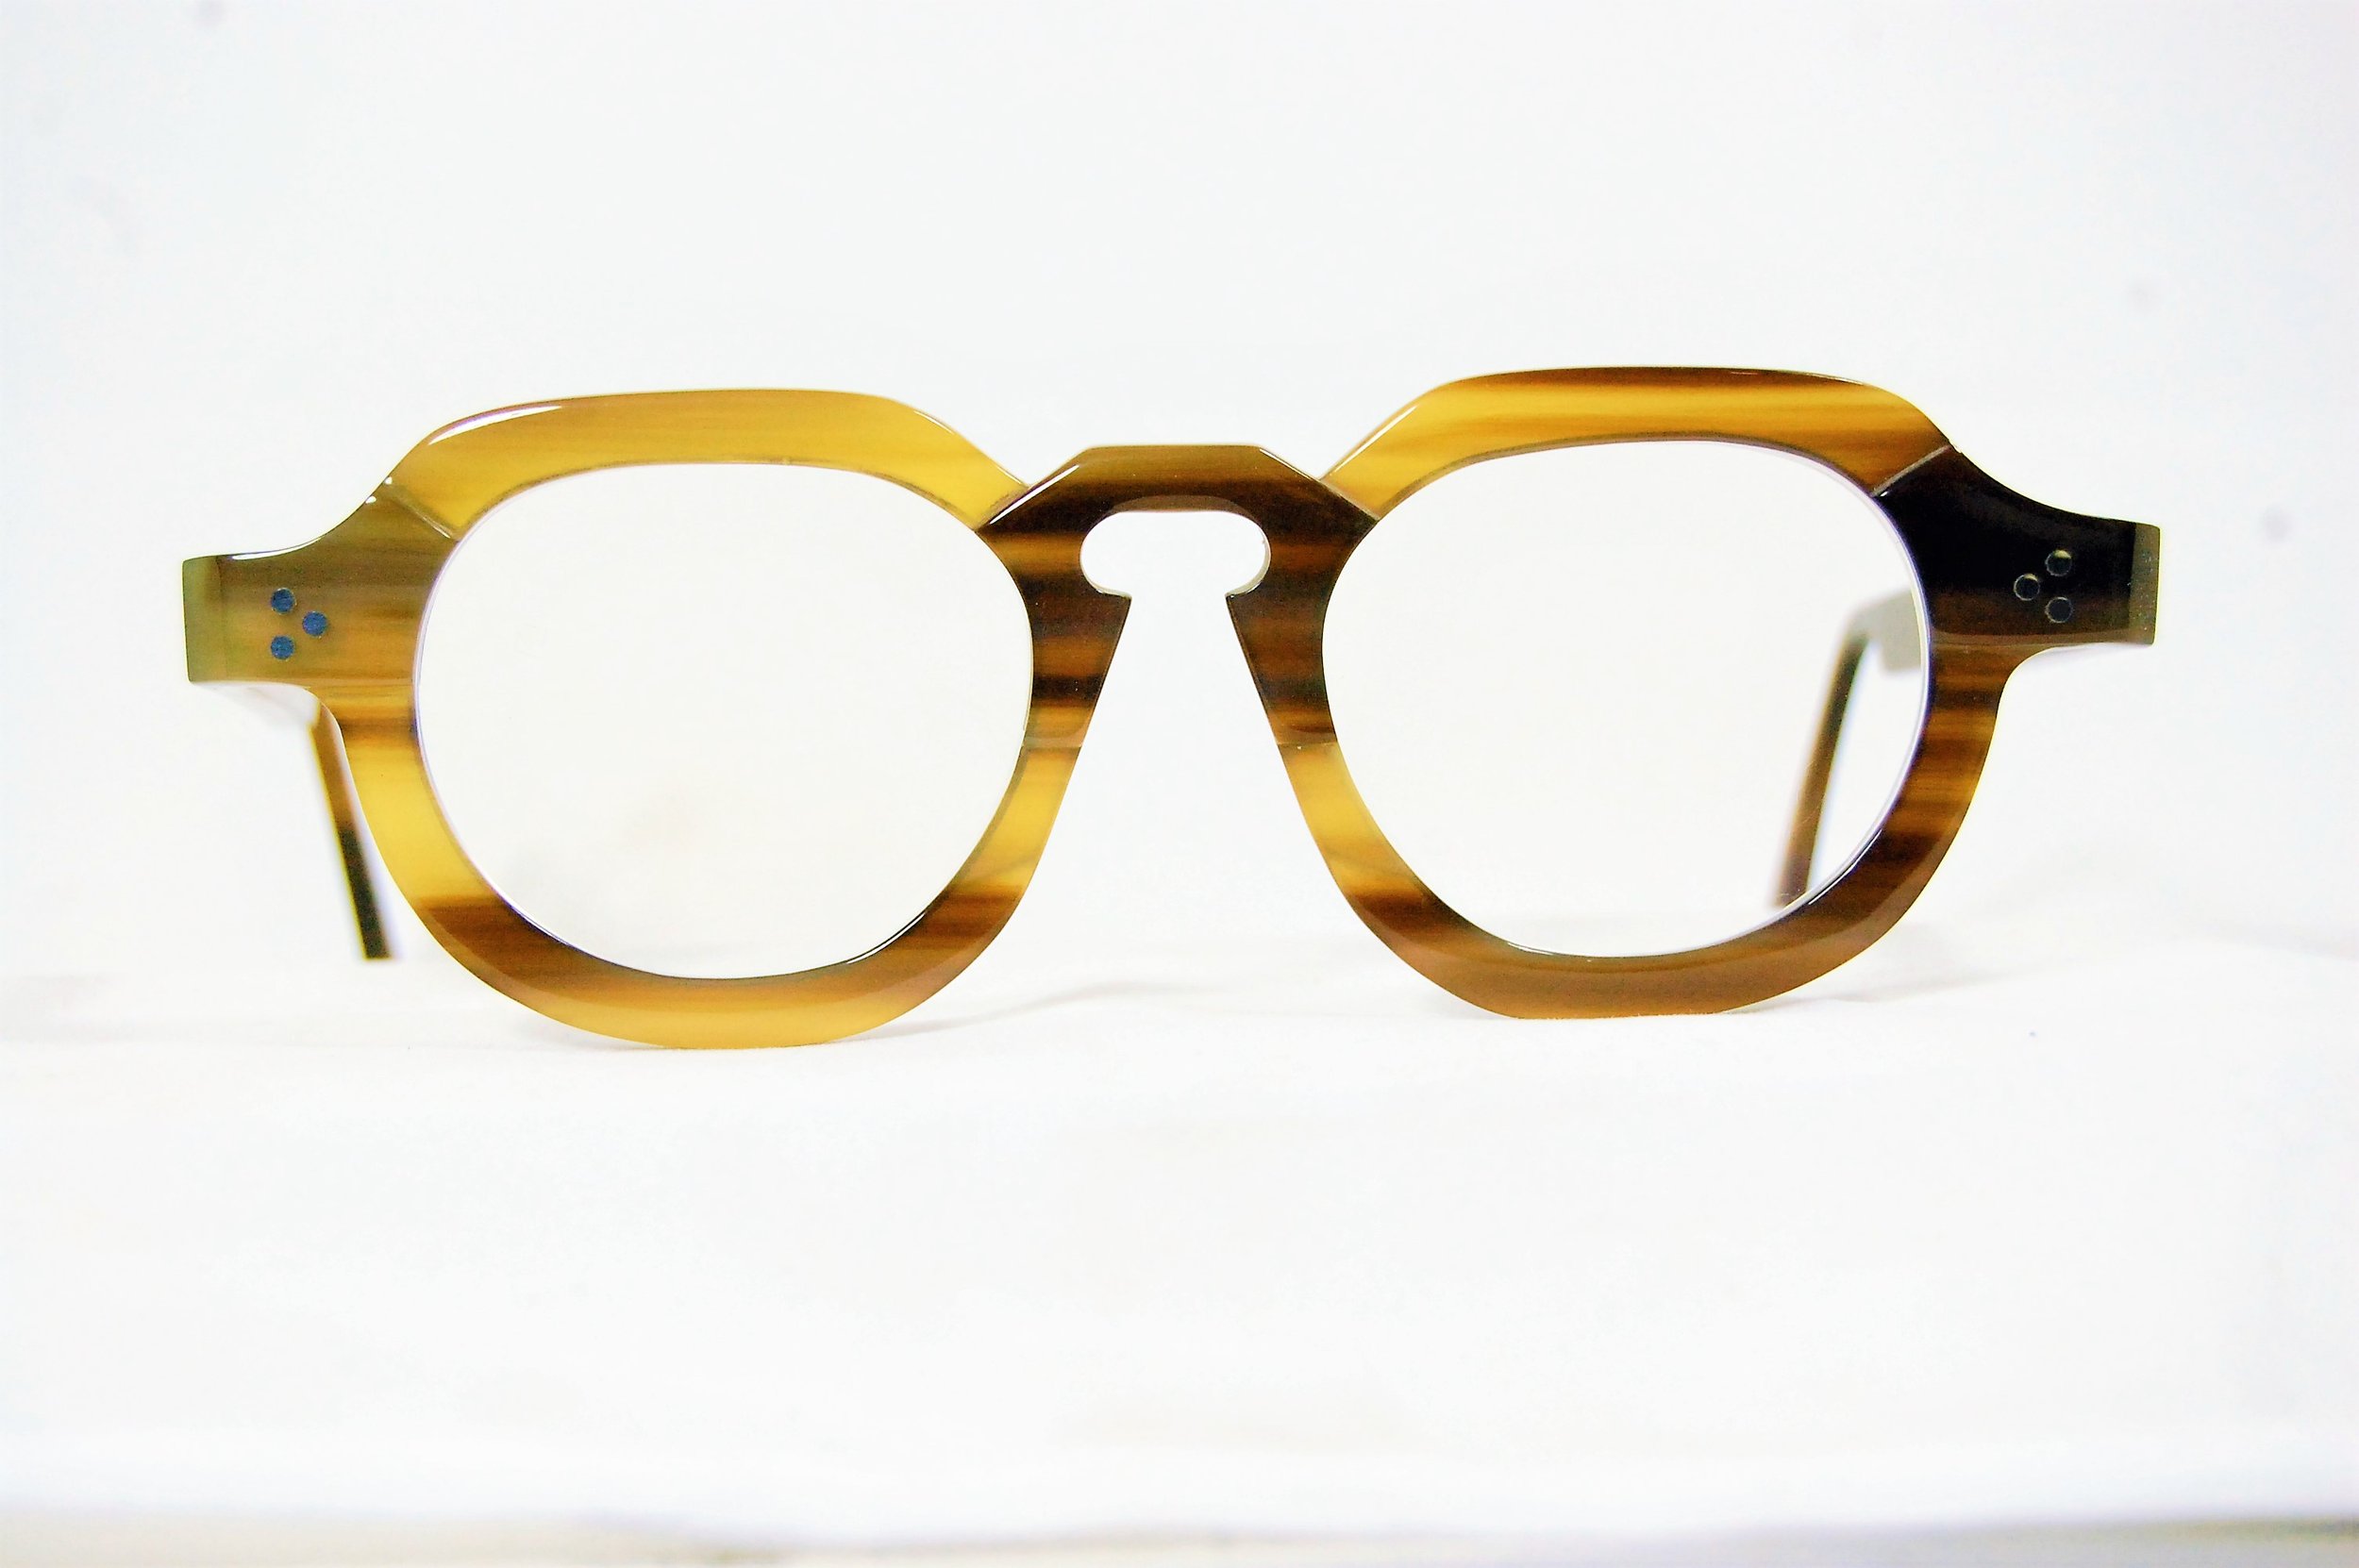 Horned glasses